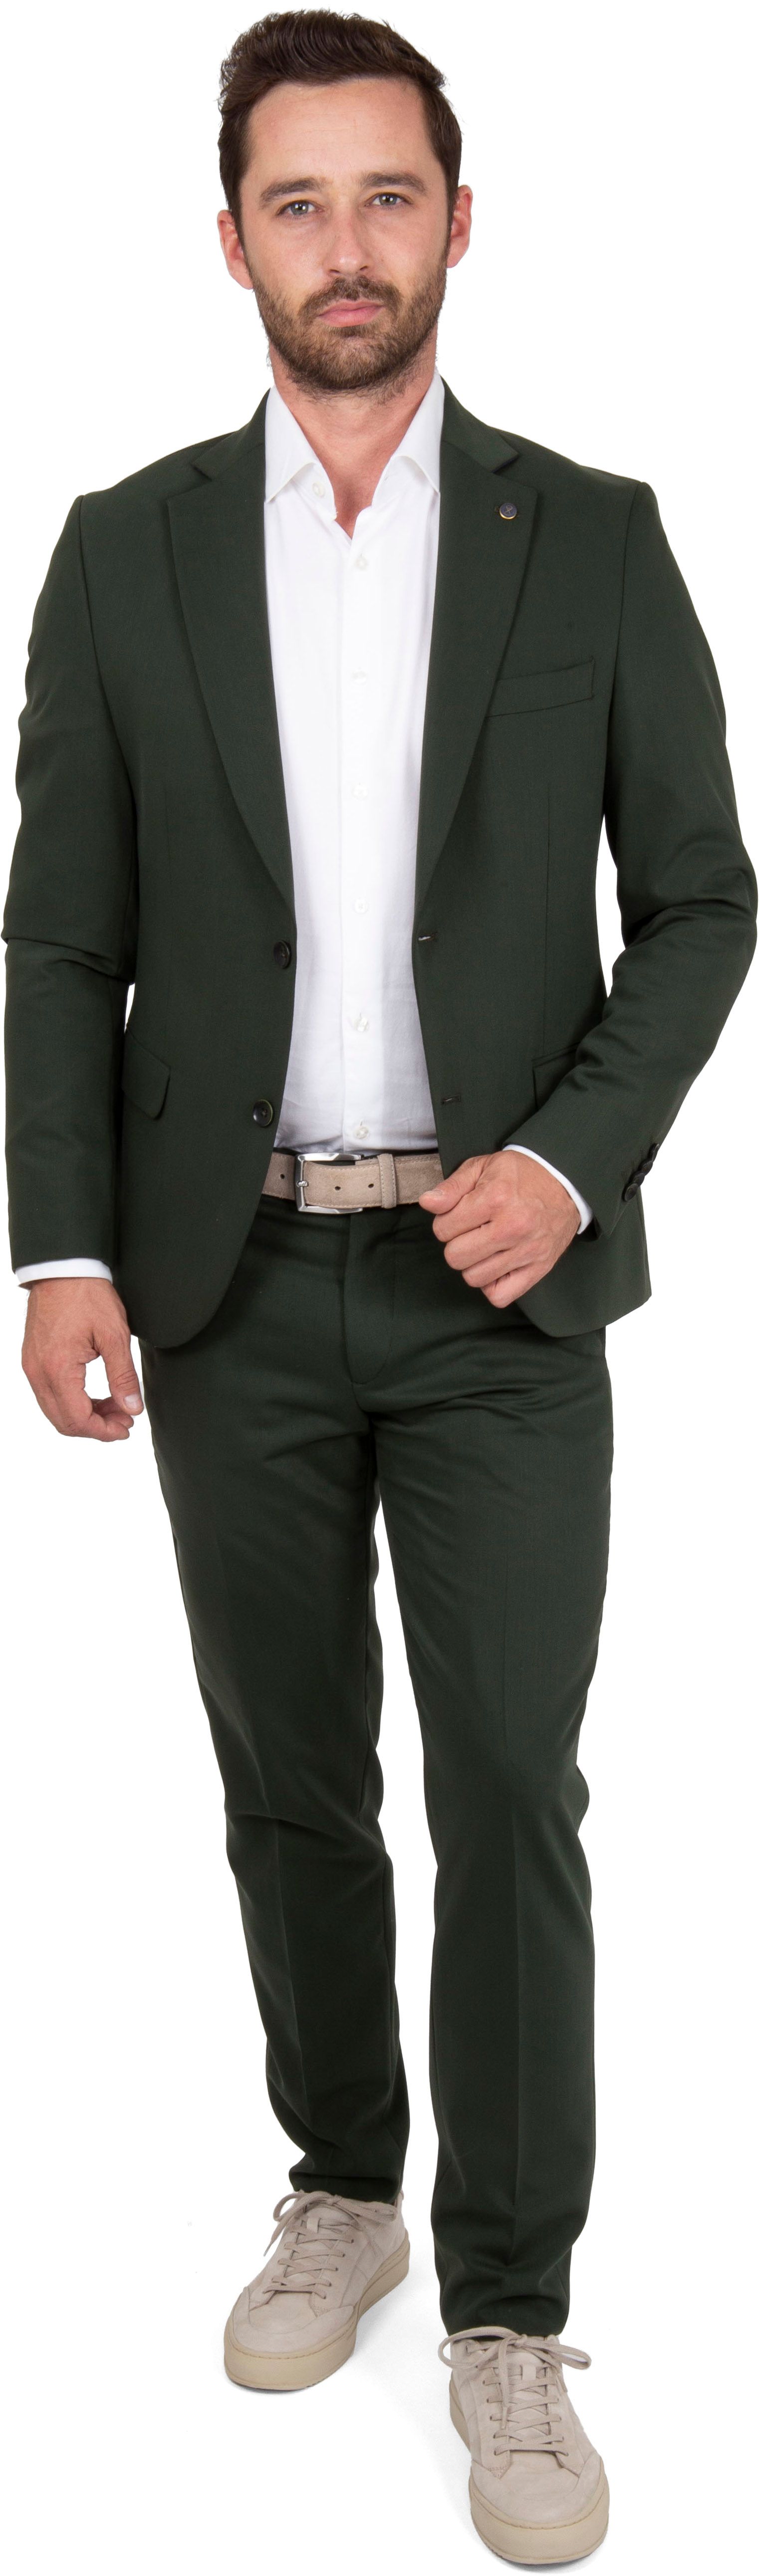 Suitable Costume Mid Vert Vert foncé taille 46